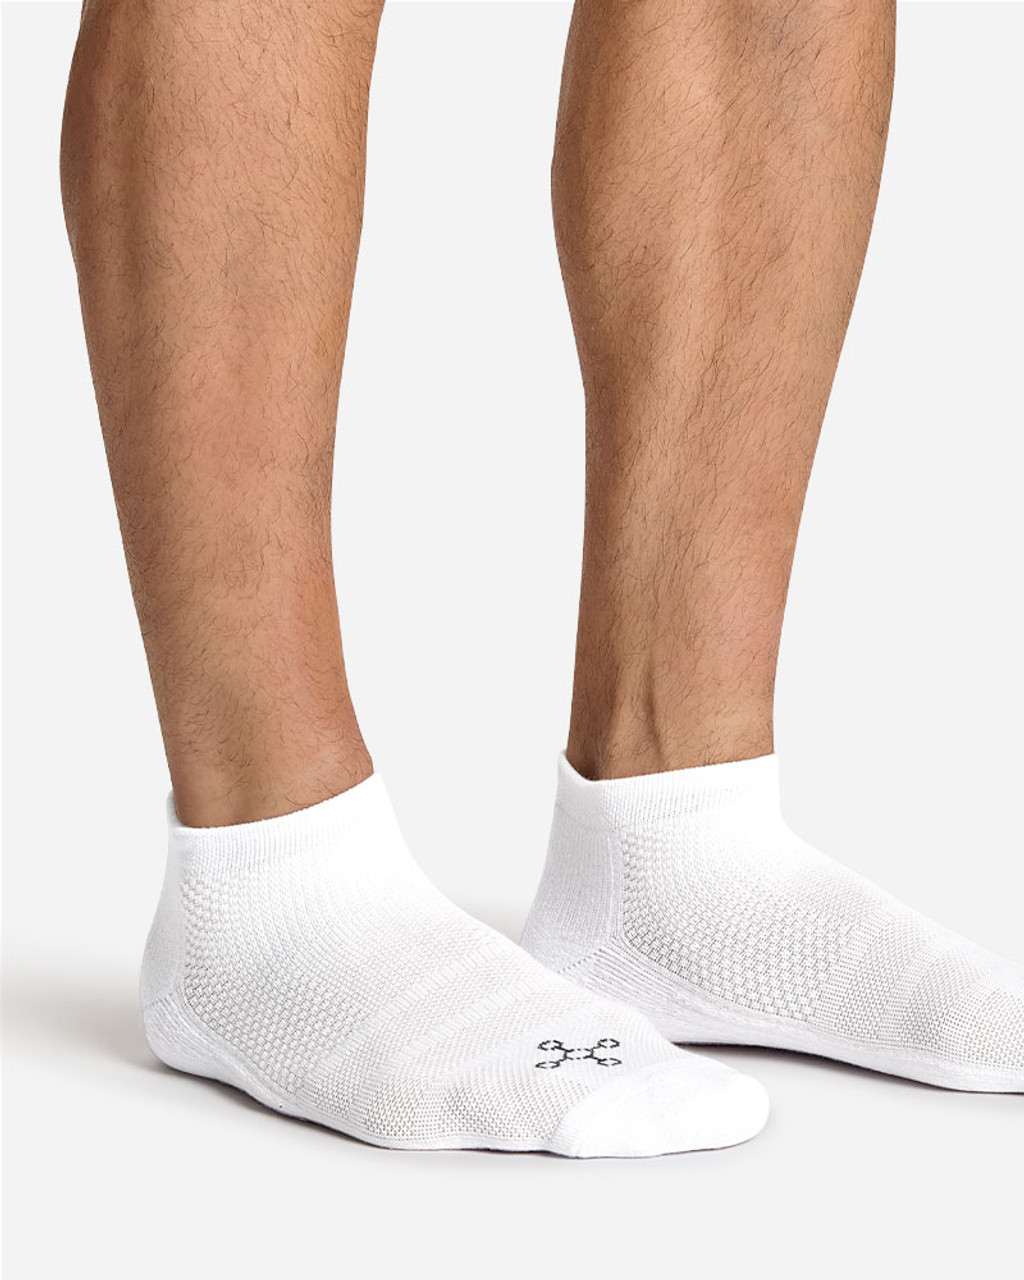 Men's Easy-On, Easy-Off Compression Socks